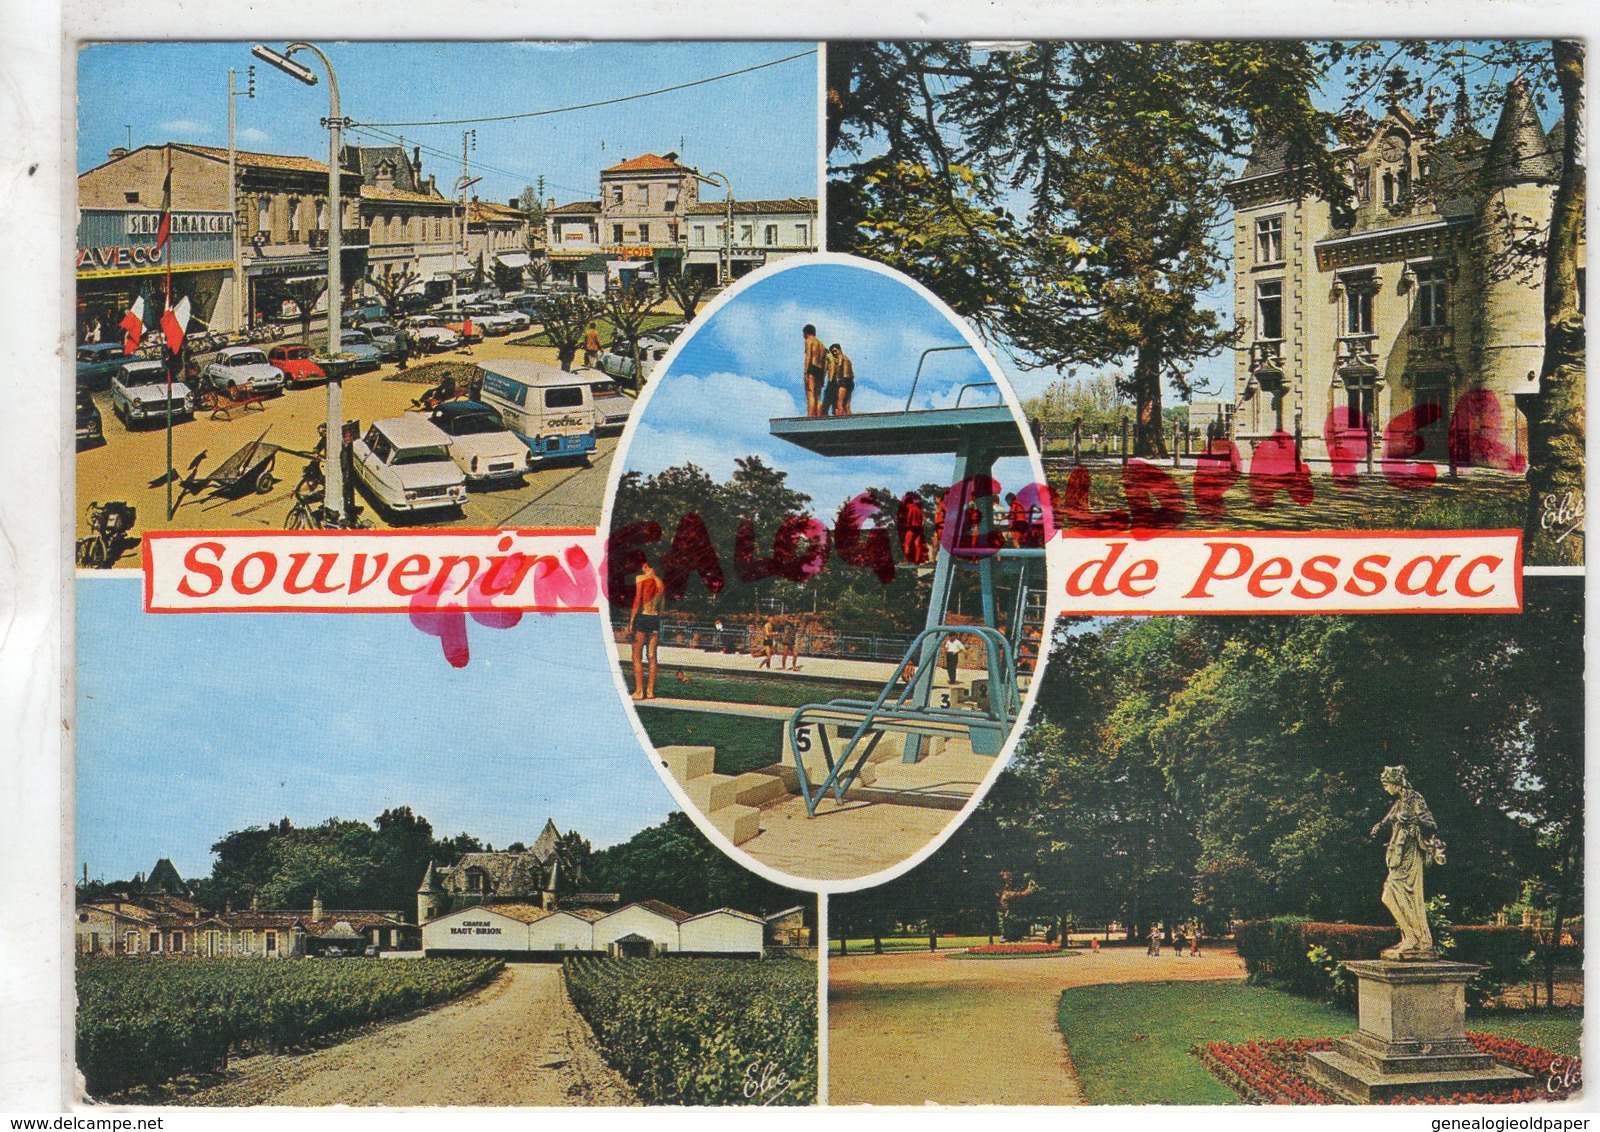 33- PESSAC SUR DORDOGNE -GIRONDE- SOUVENIR CHATEAU HAUT BRION-PISCINE-JARDIN PUBLIC-PLACE - Bordeaux